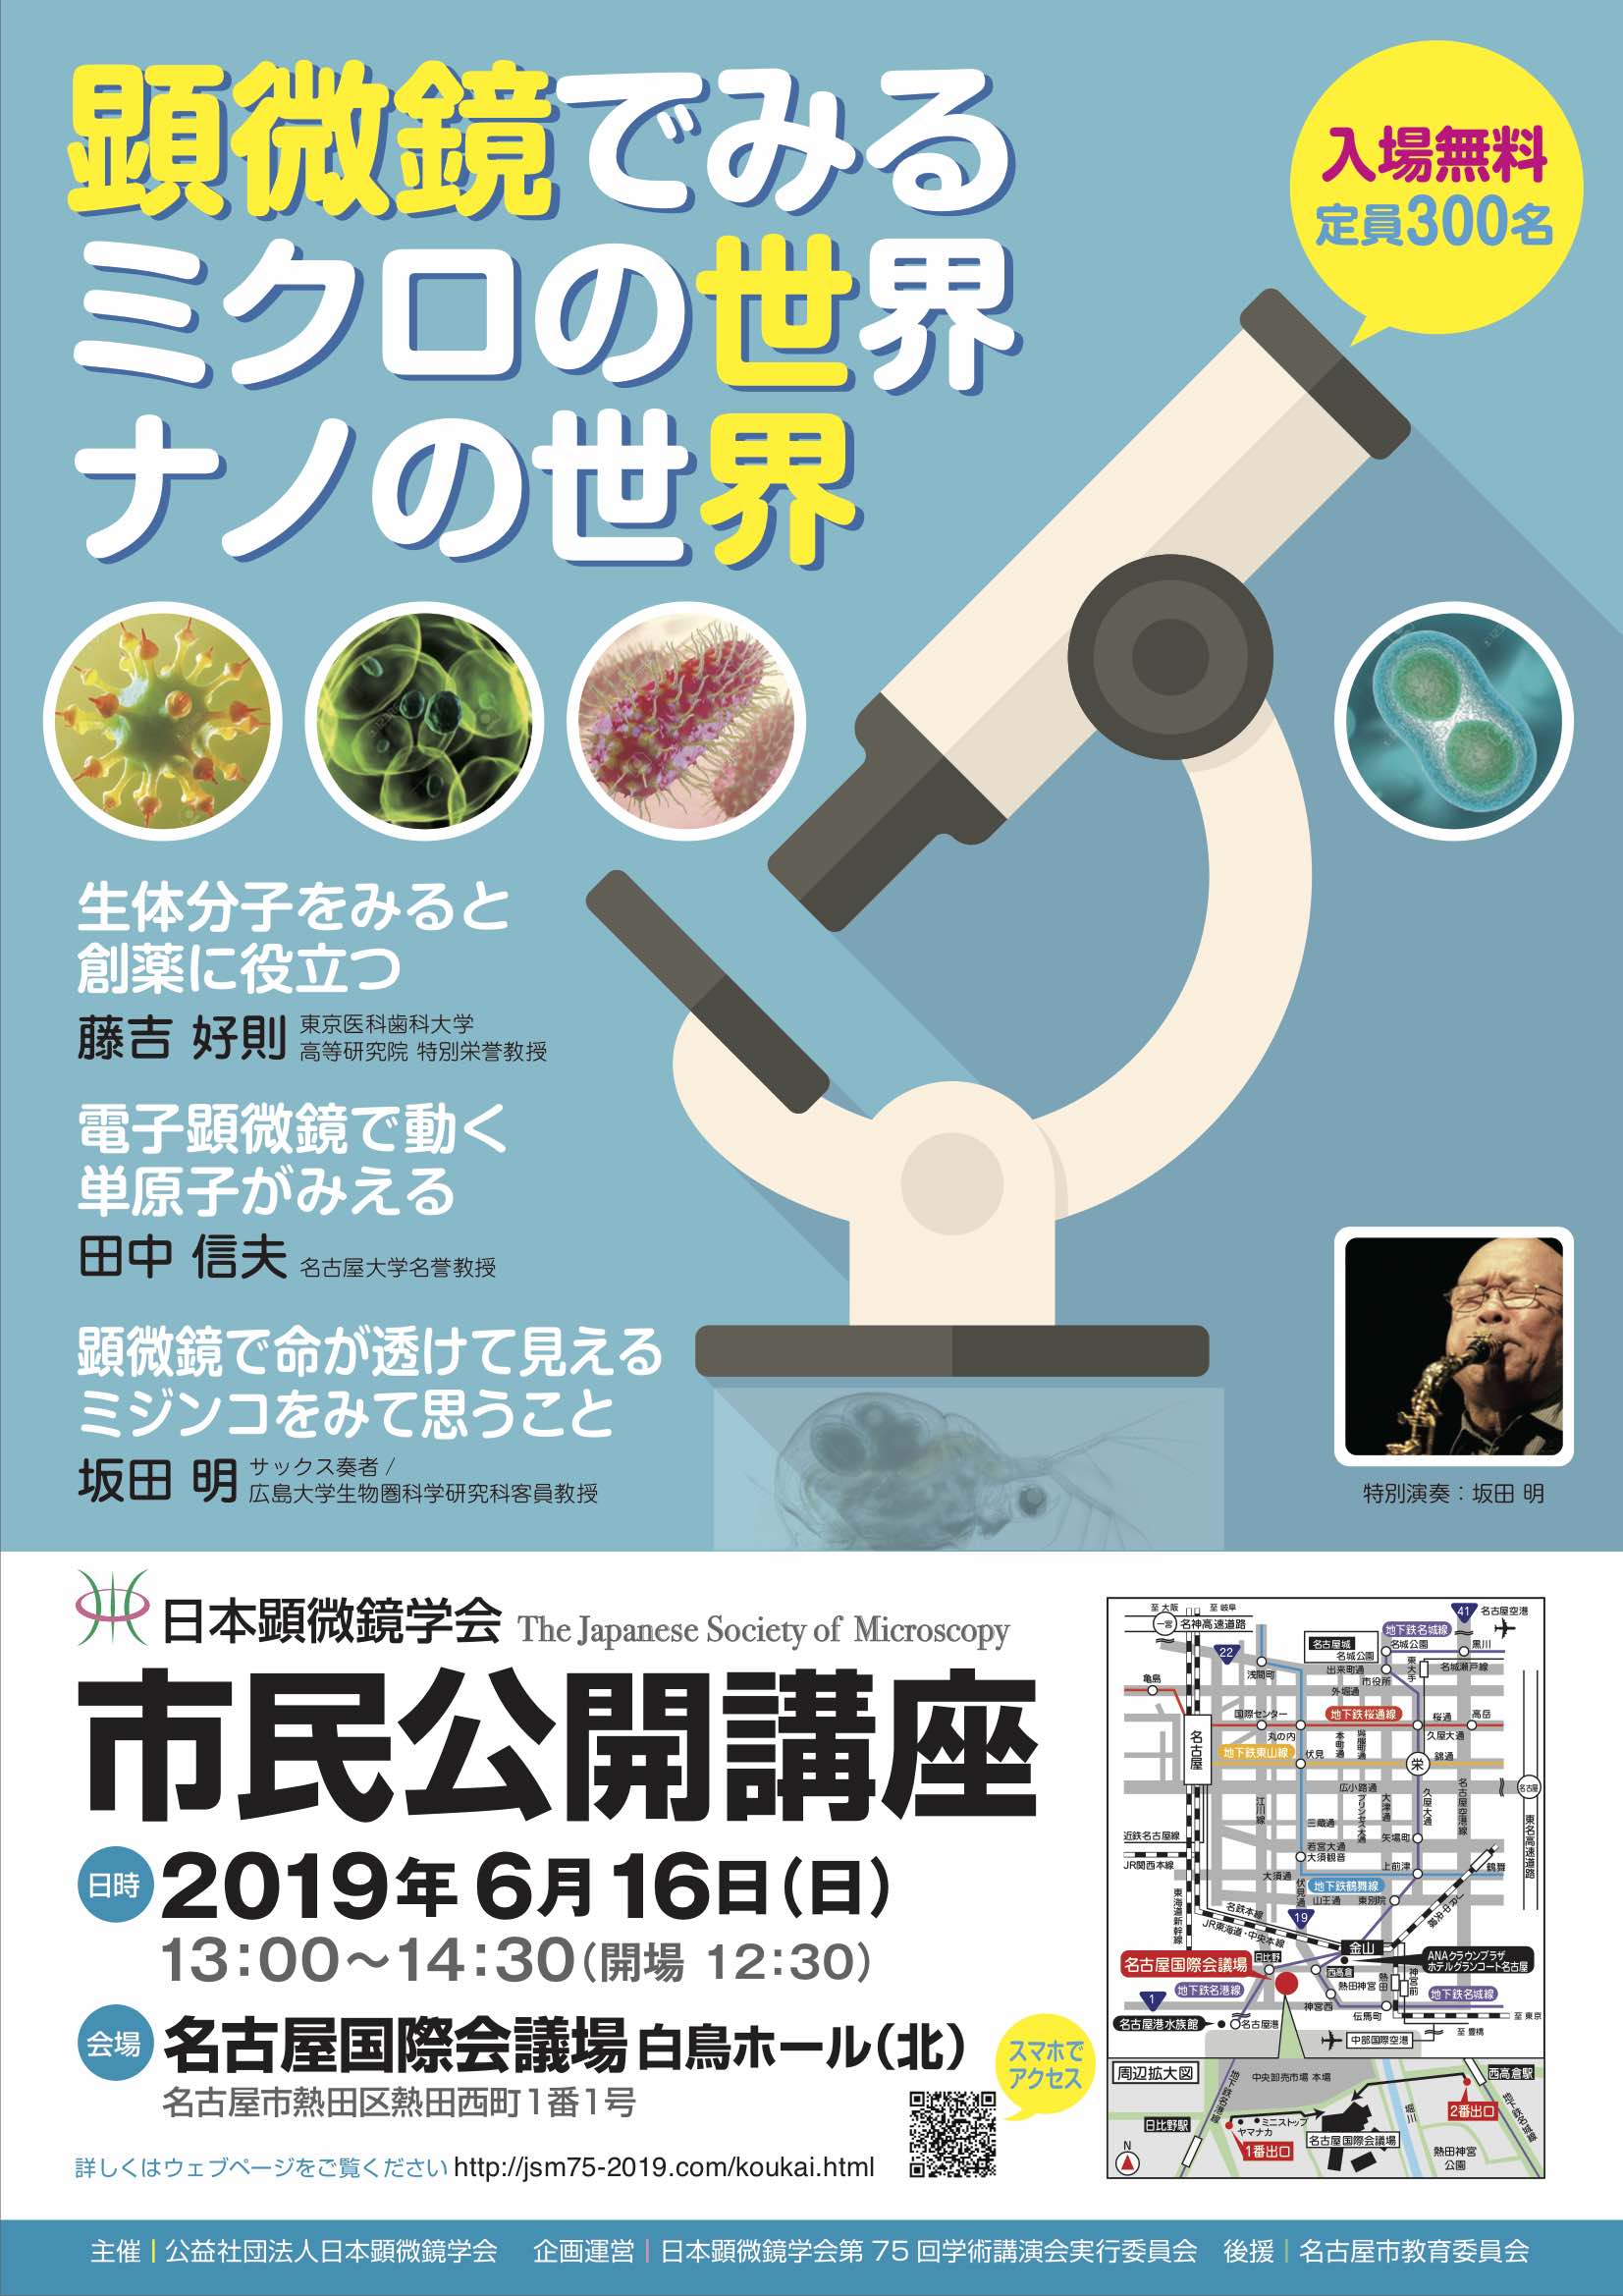 日本顕微鏡学会市民公開講座「顕微鏡でみるミクロの世界・ナノの世界」